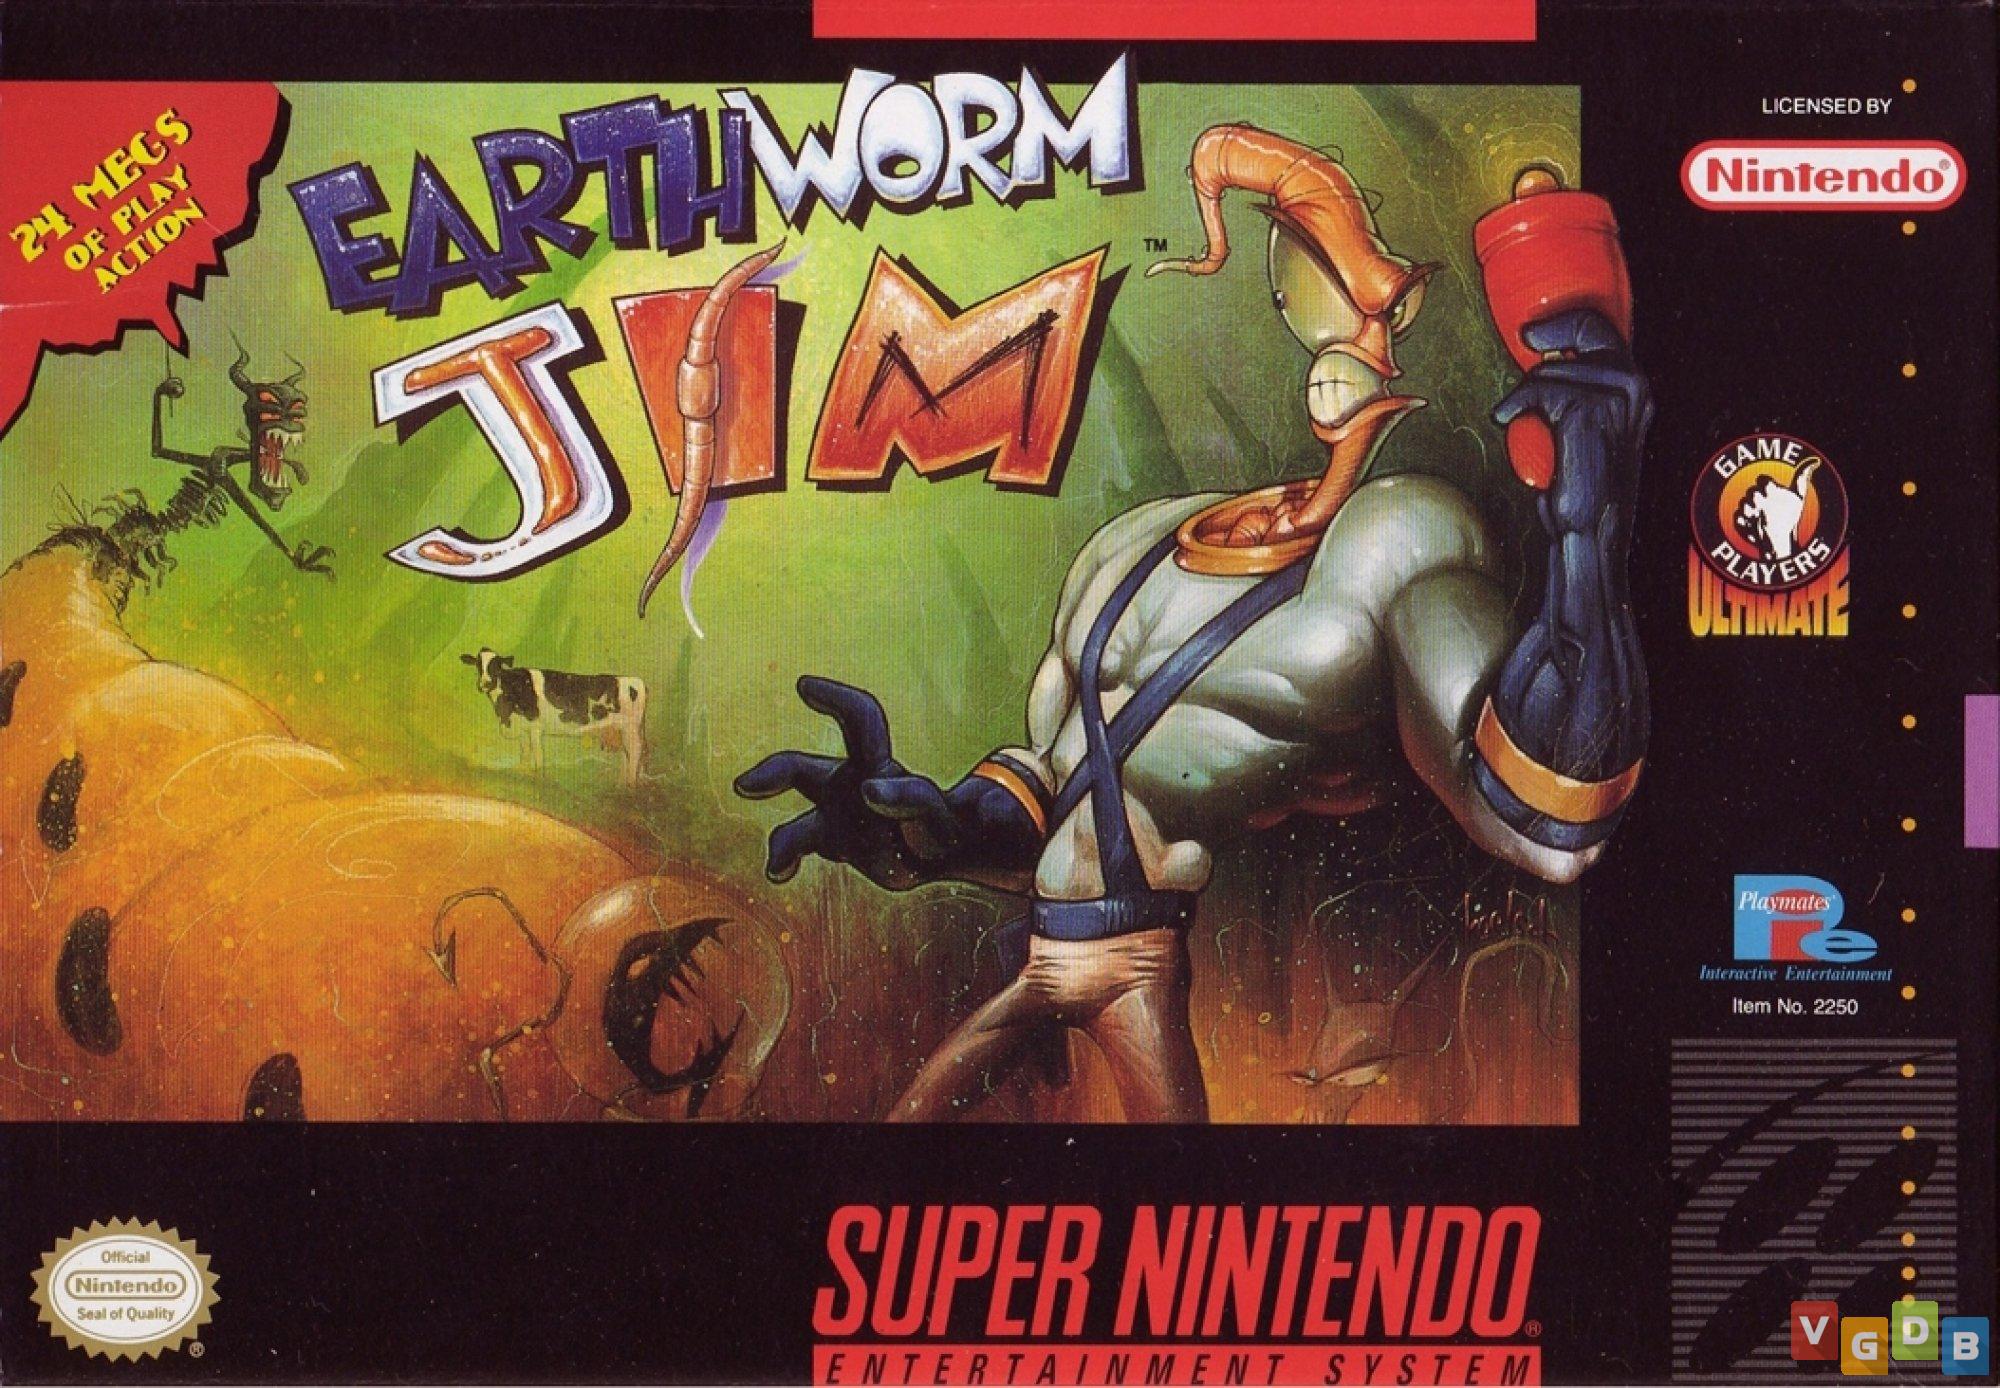 Earthworm Jim  Novo jogo da franquia está sendo desenvolvido pela